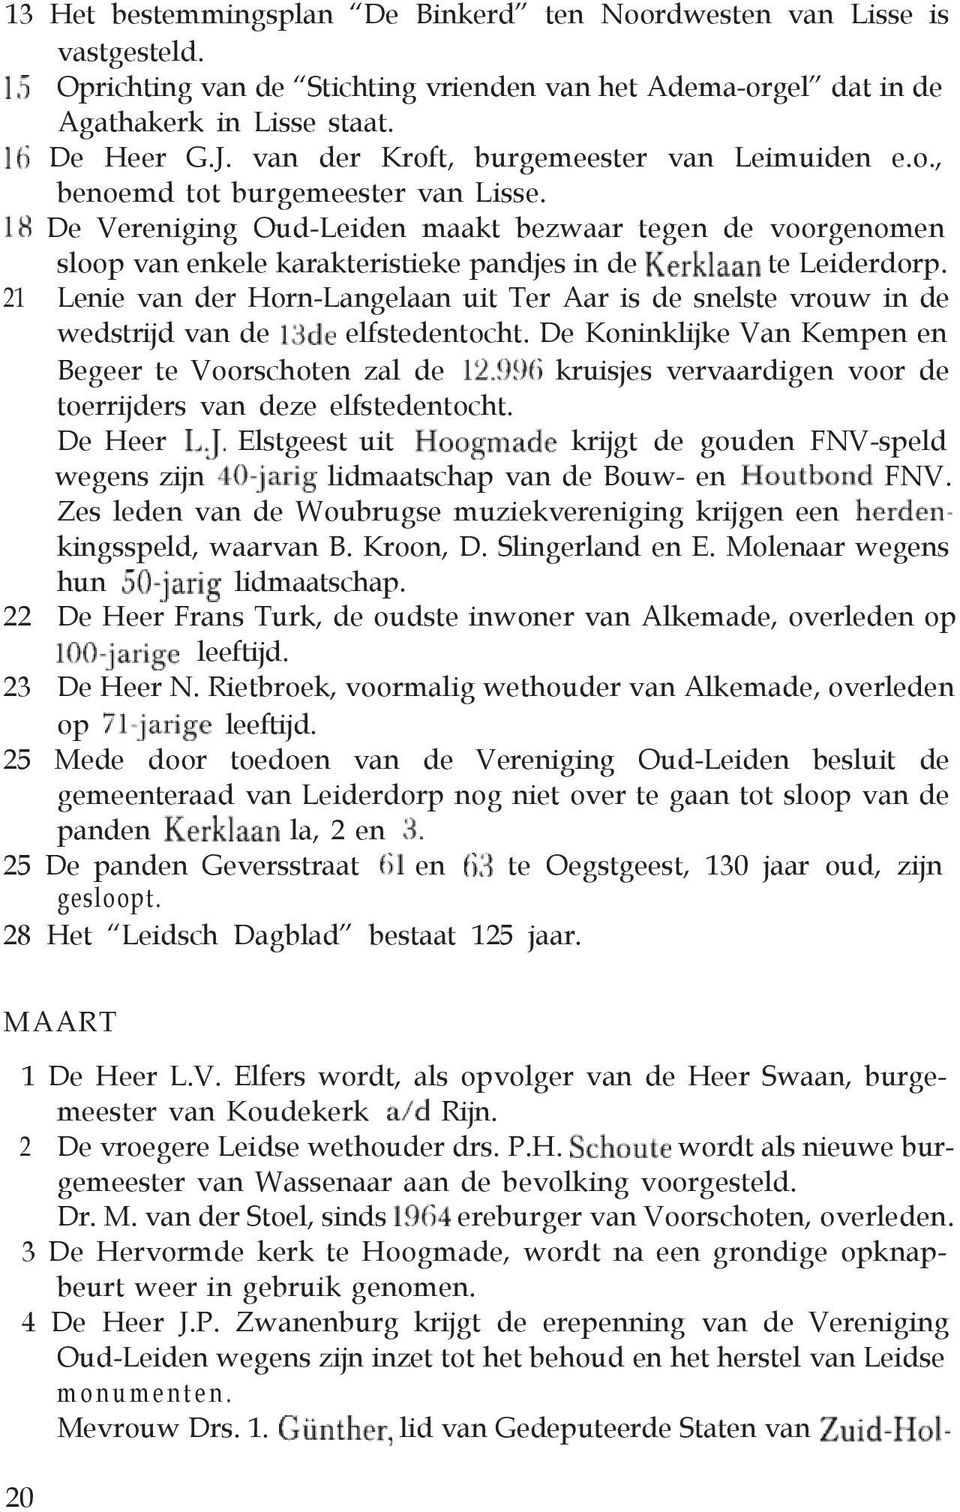 De Vereniging Oud-Leiden maakt bezwaar tegen de voorgenomen sloop van enkele karakteristieke pandjes in de te Leiderdorp.